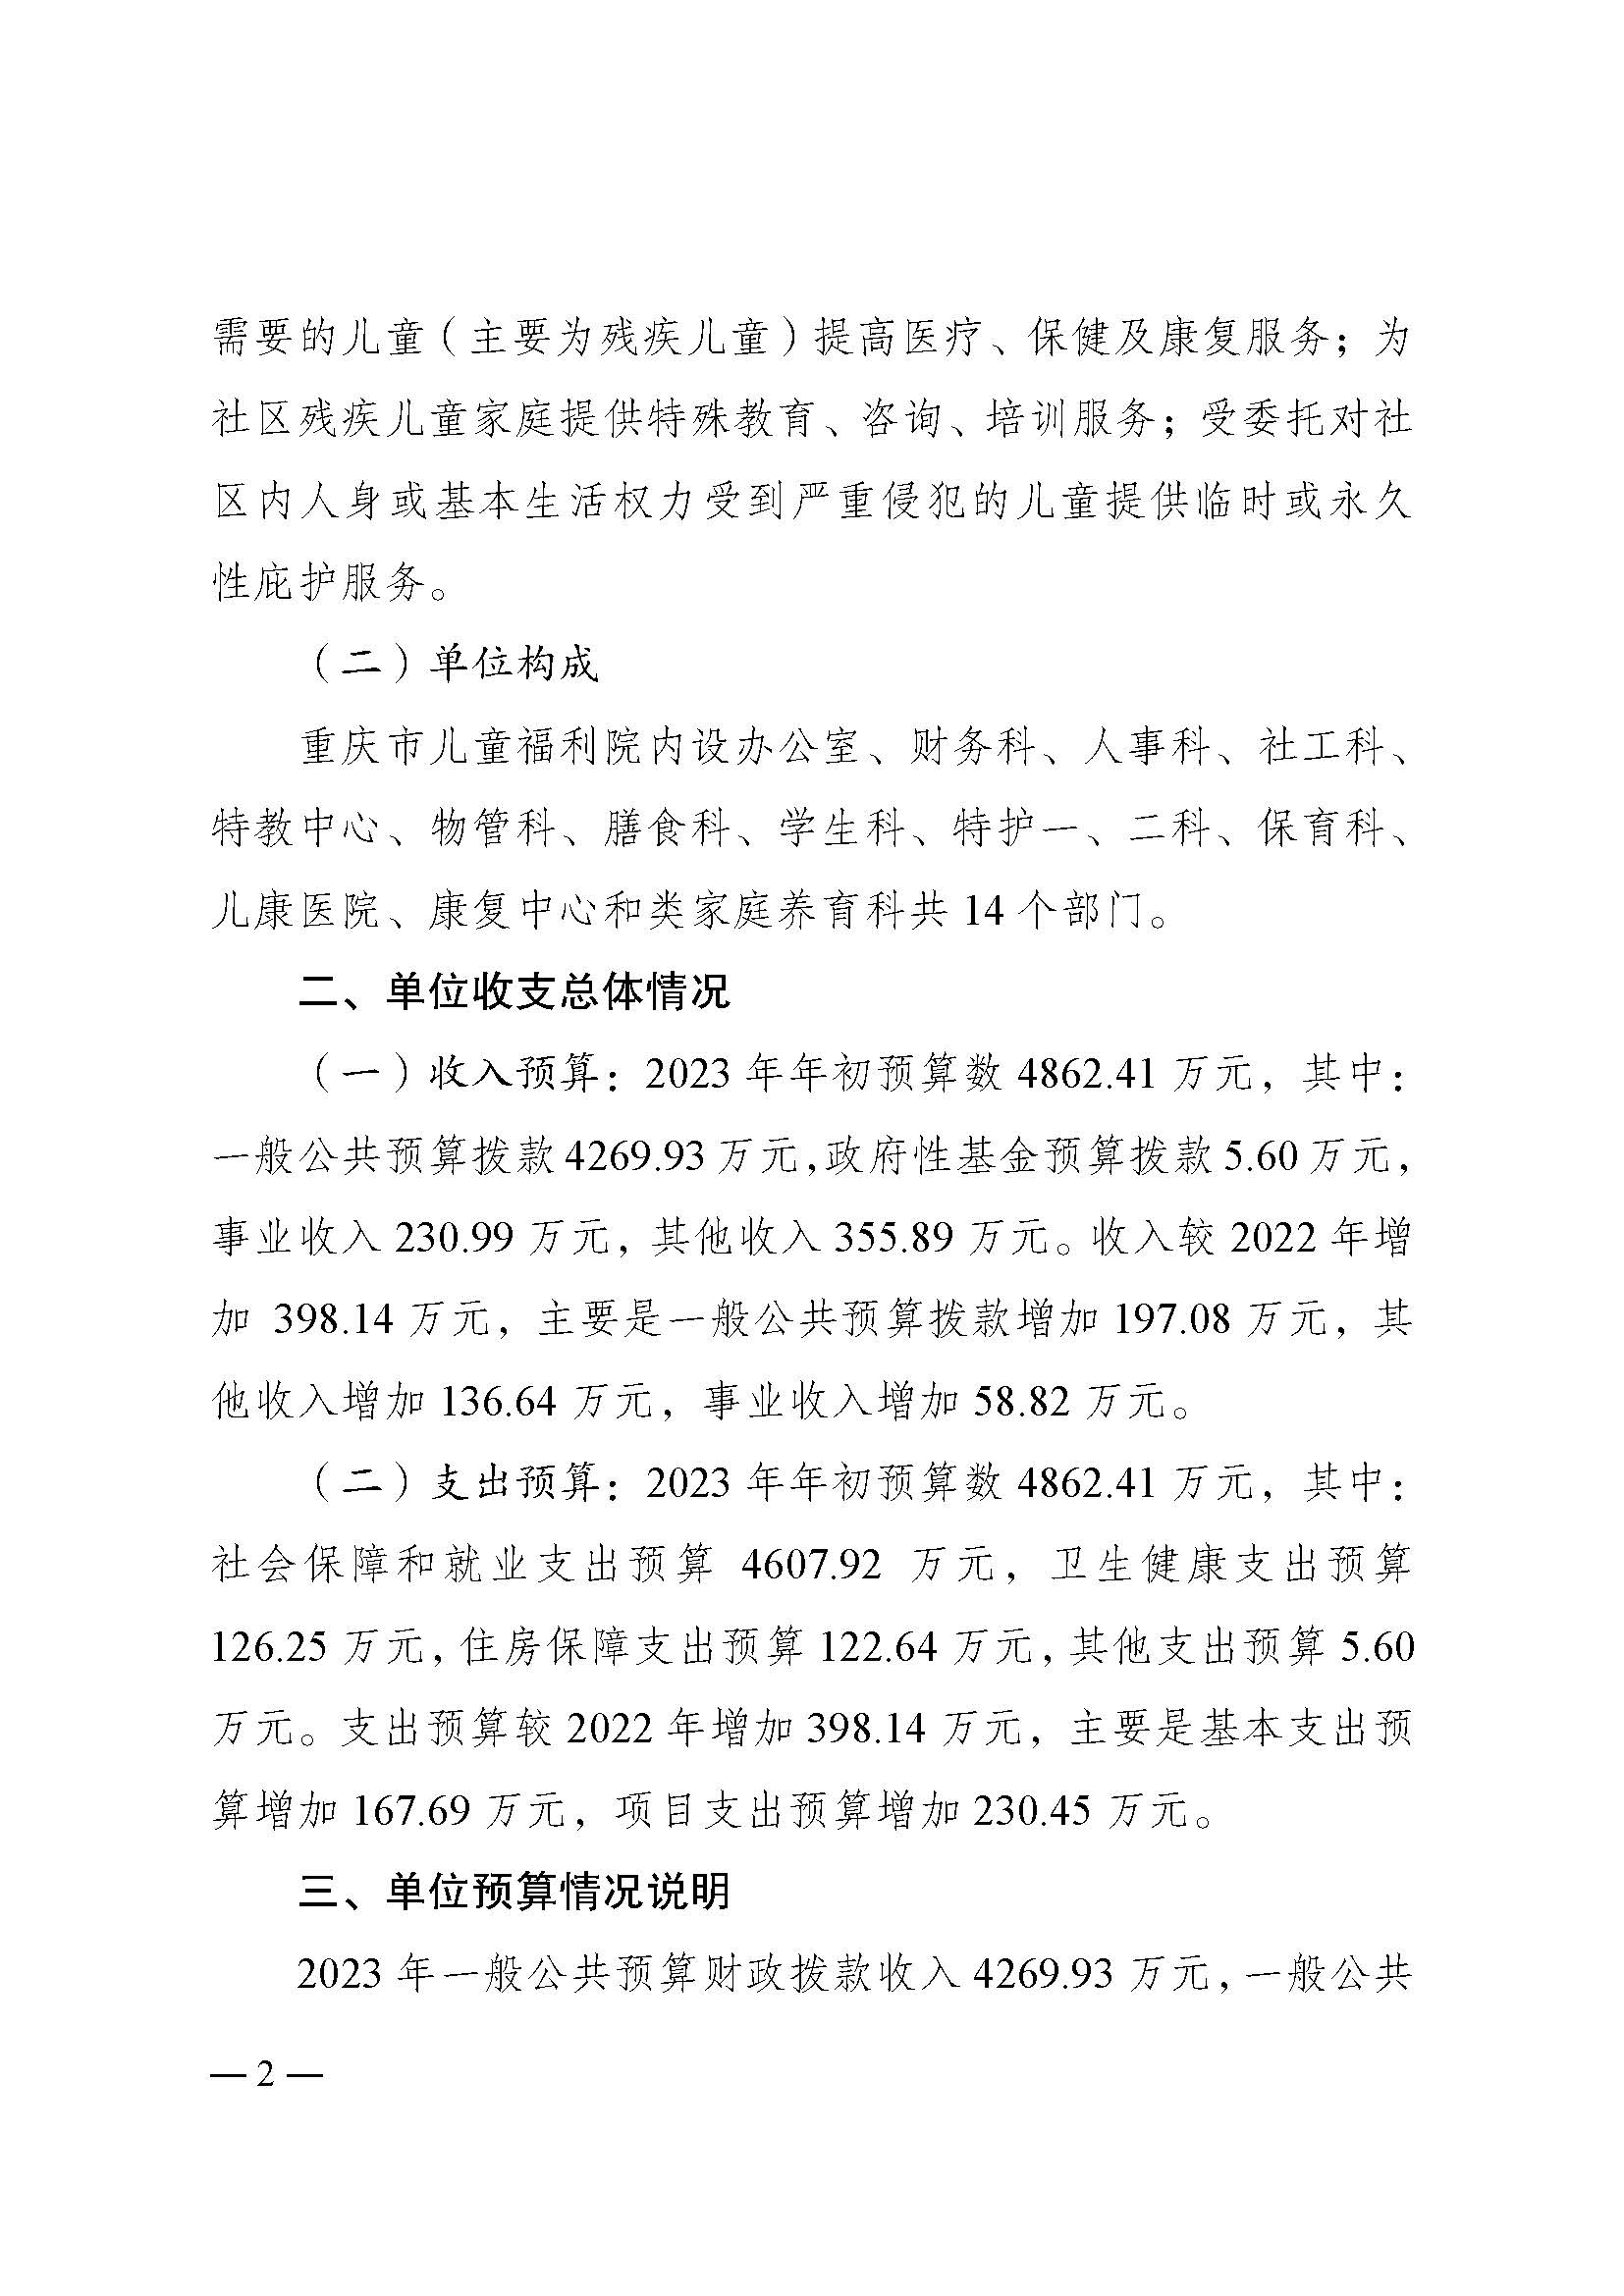 2023年单位预算公开说明（重庆市儿童福利院）_页面_2.jpg